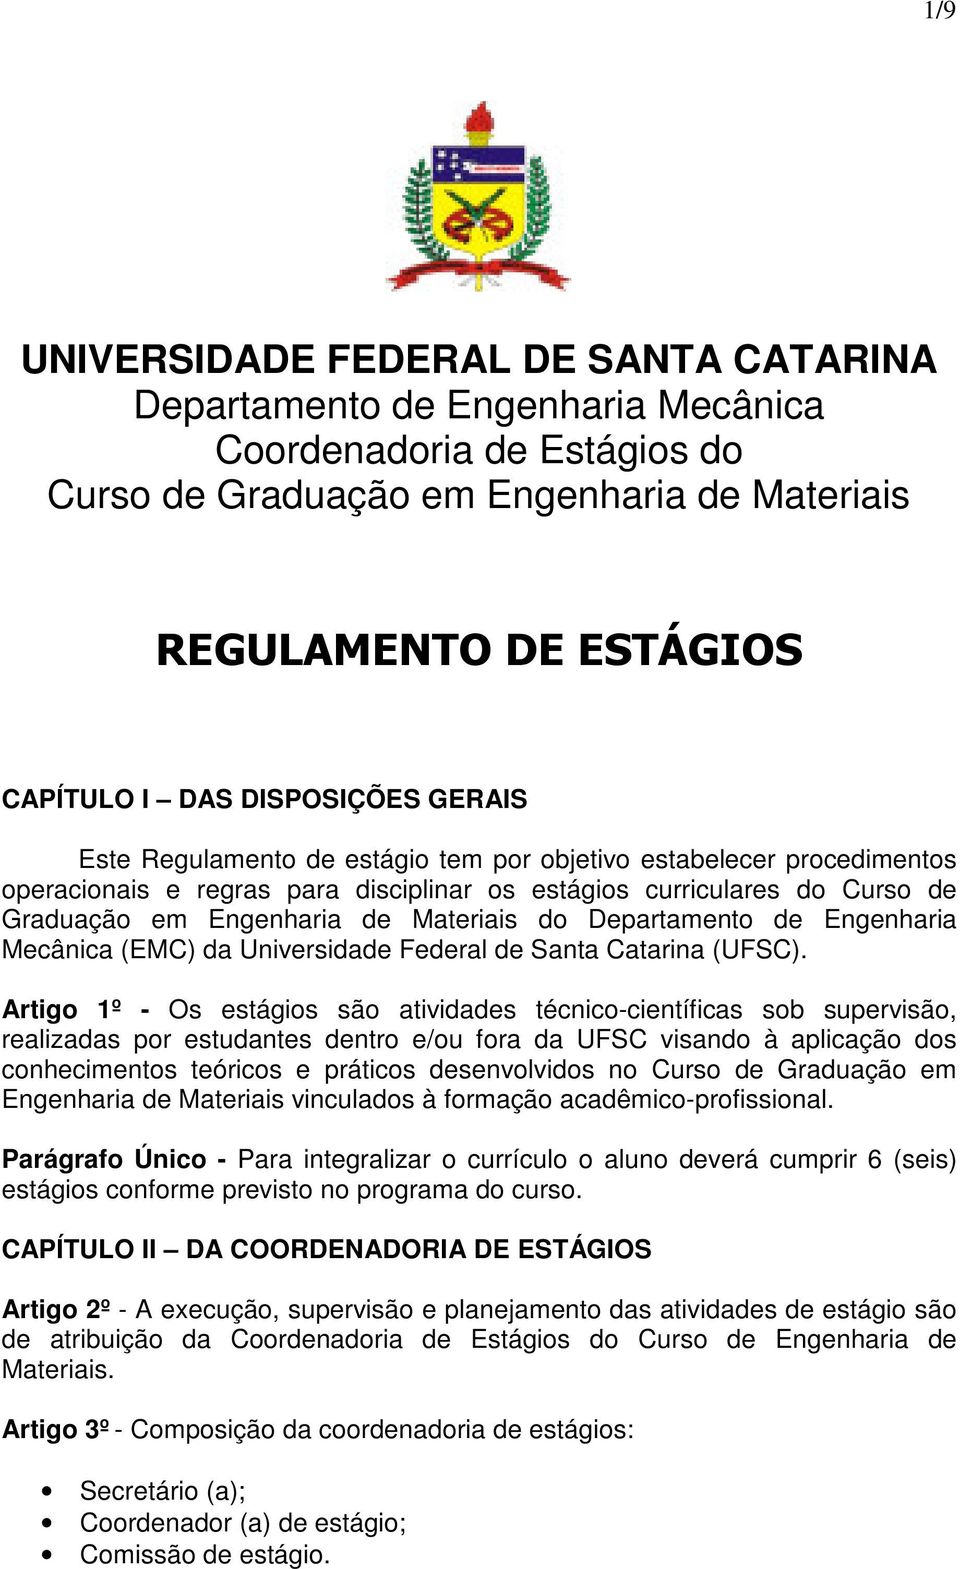 Engenharia Mecânica (EMC) da Universidade Federal de Santa Catarina (UFSC).